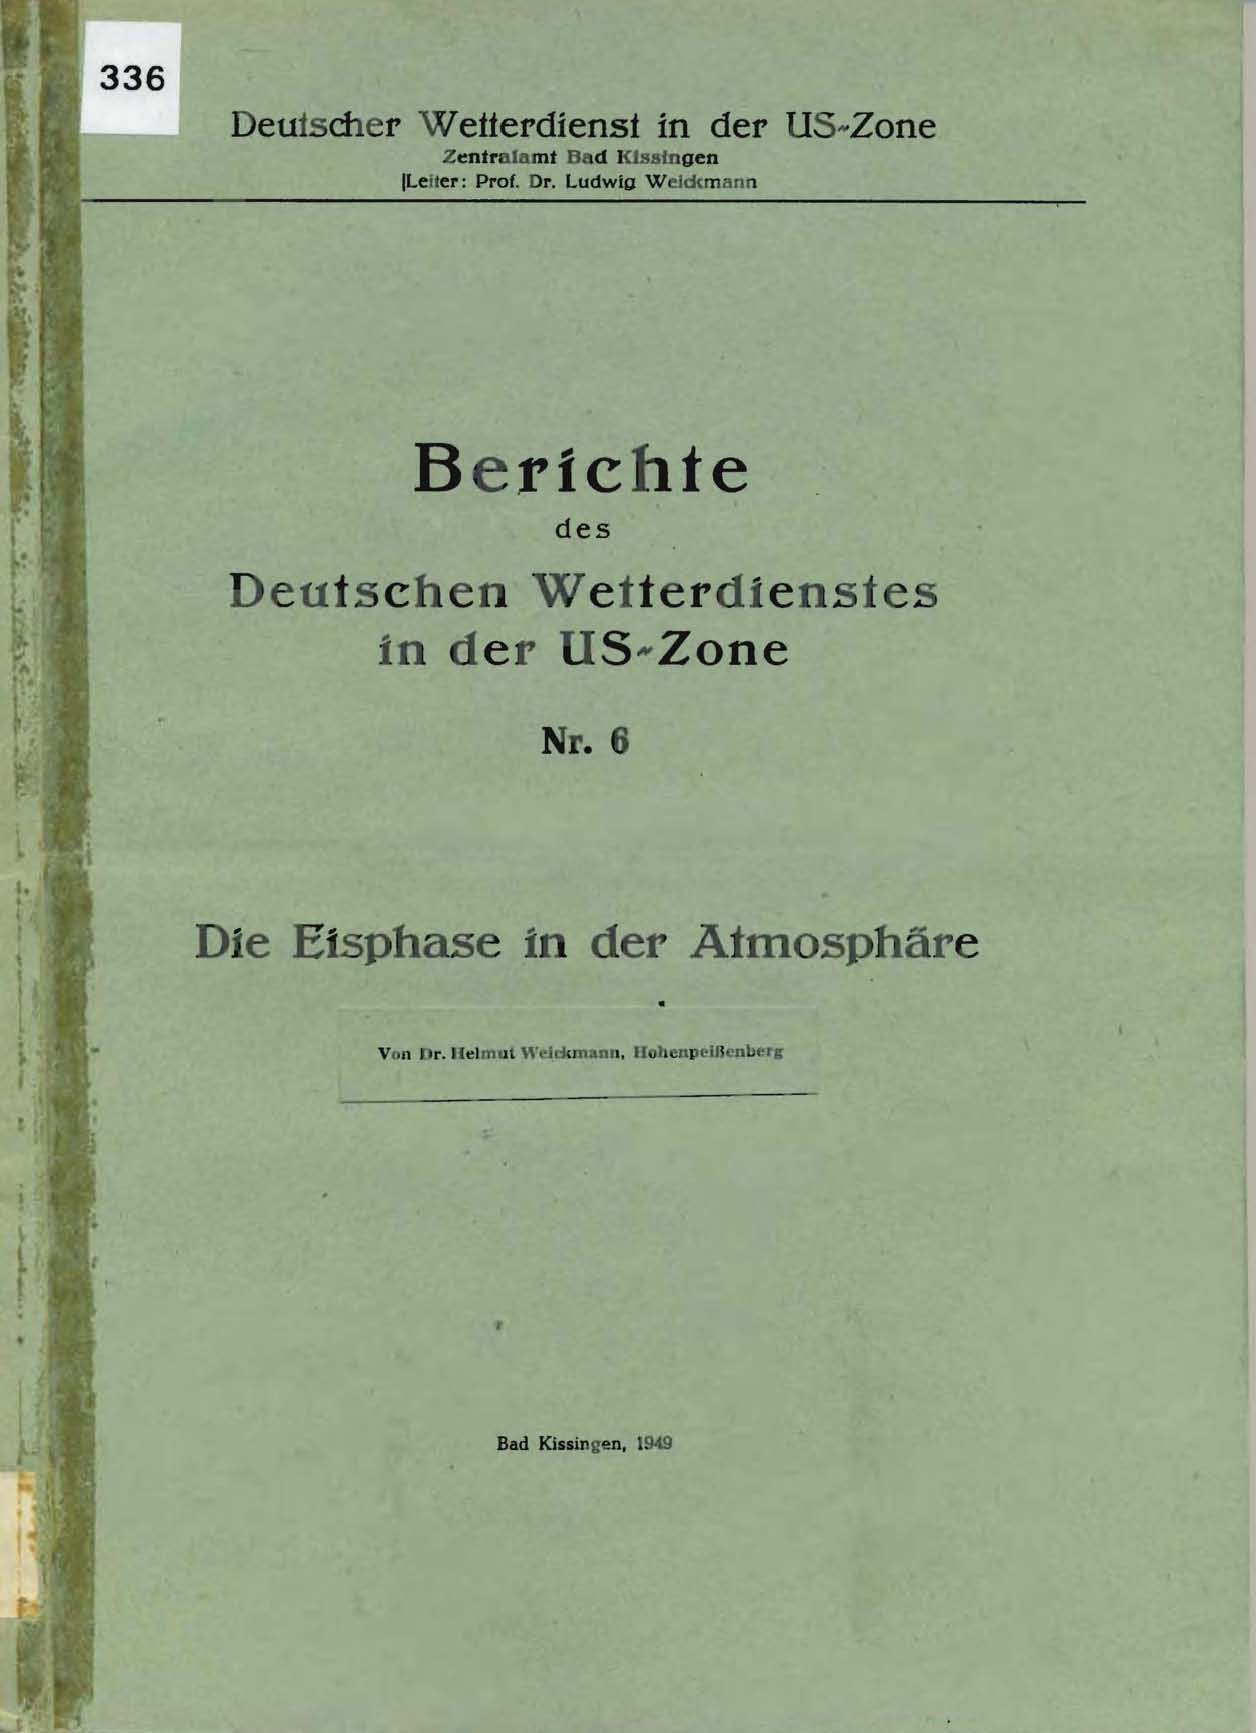 Berichte des Deutschen Wetterdienstes in der US-Zone, Nr. 6